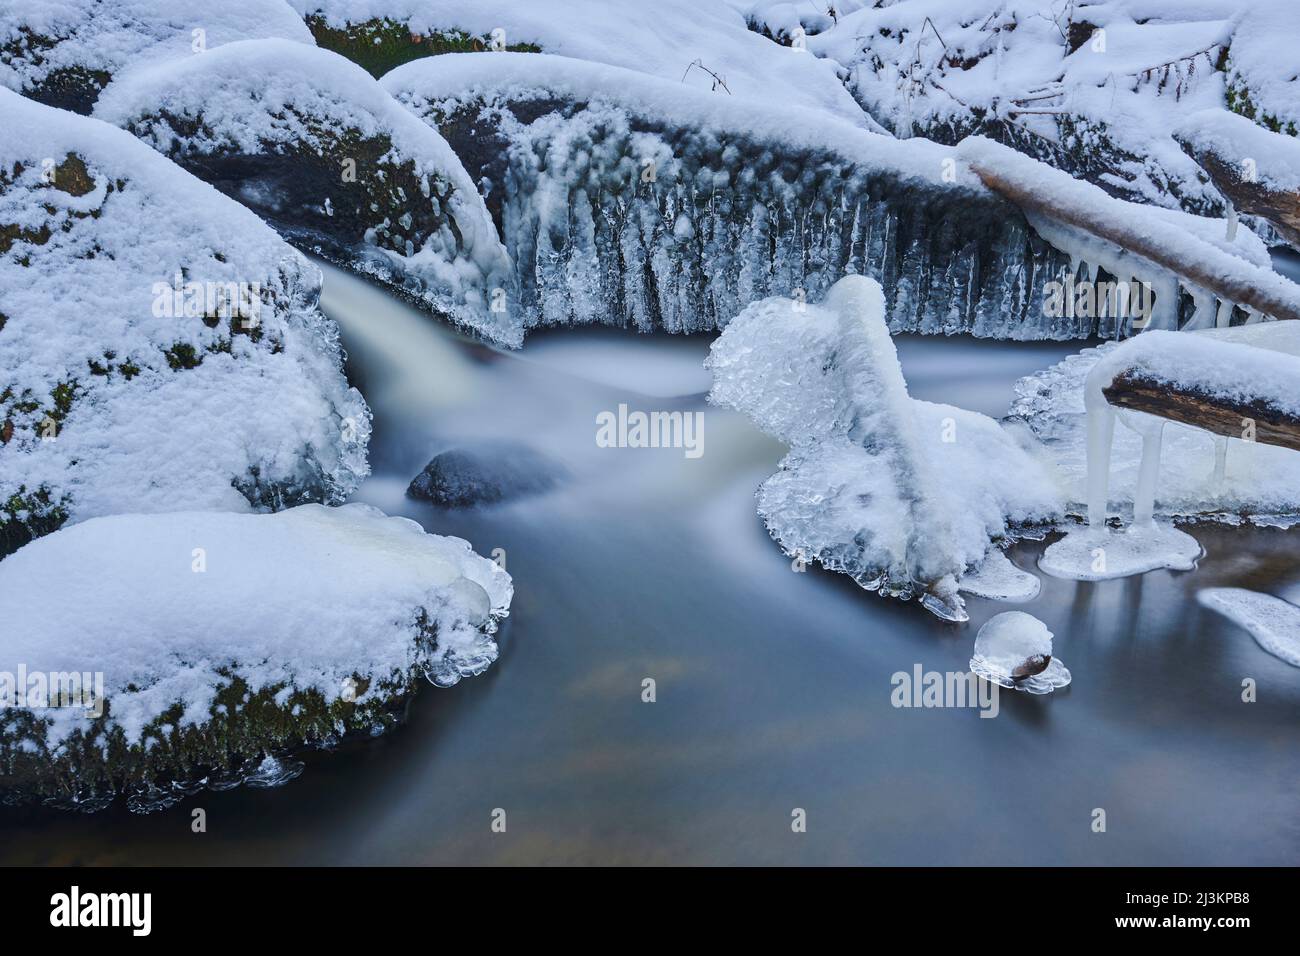 Dettagli su ghiaccio e neve in un ruscello che scorre attraverso una foresta innevata nella Riserva Naturale dell'Inferno, Foresta Bavarese; Palatinato superiore, Baviera, Germania Foto Stock